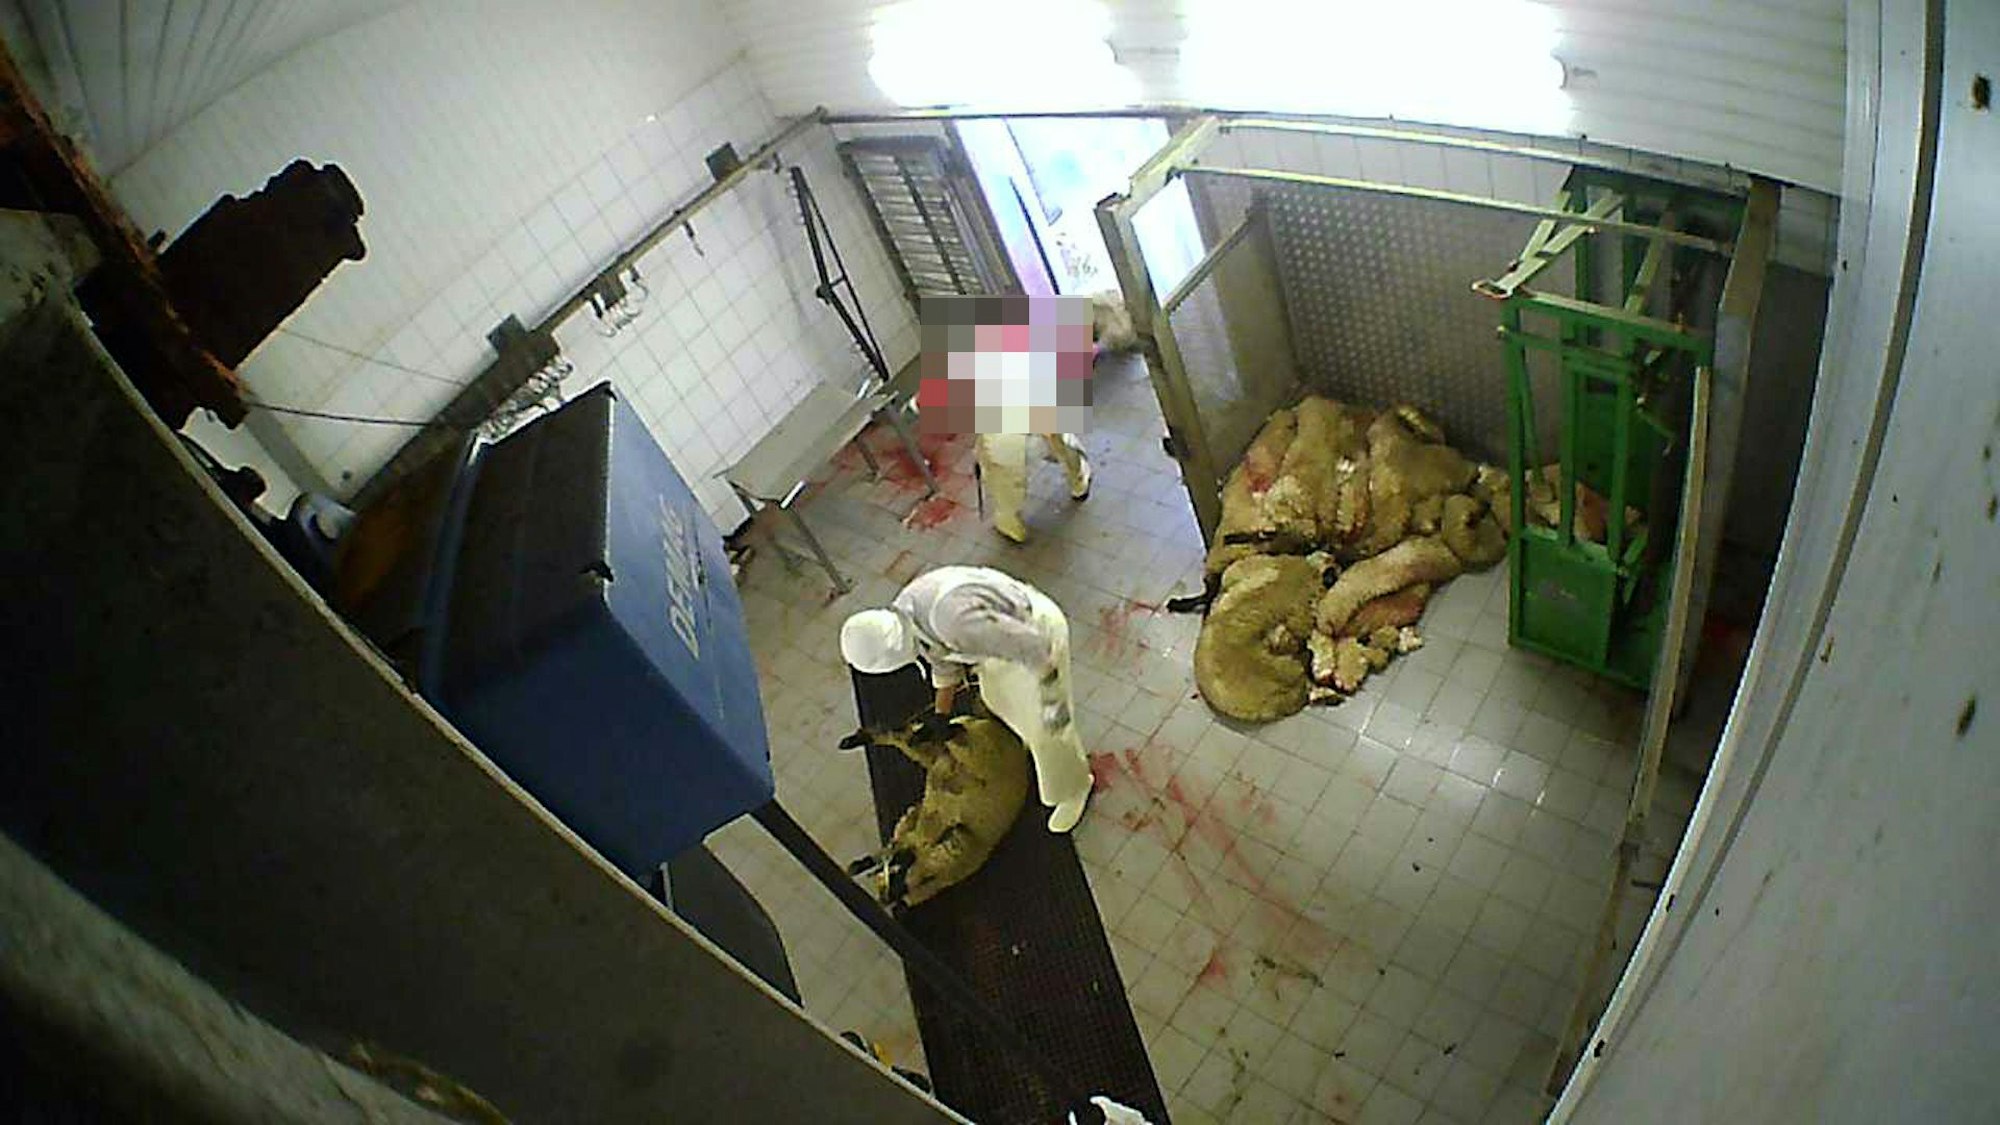 Aufnahmen einer versteckten Kamera zeigen zwei Mitarbeitende eines Schlachthofs, die Schafe in einen Raum ziehen.